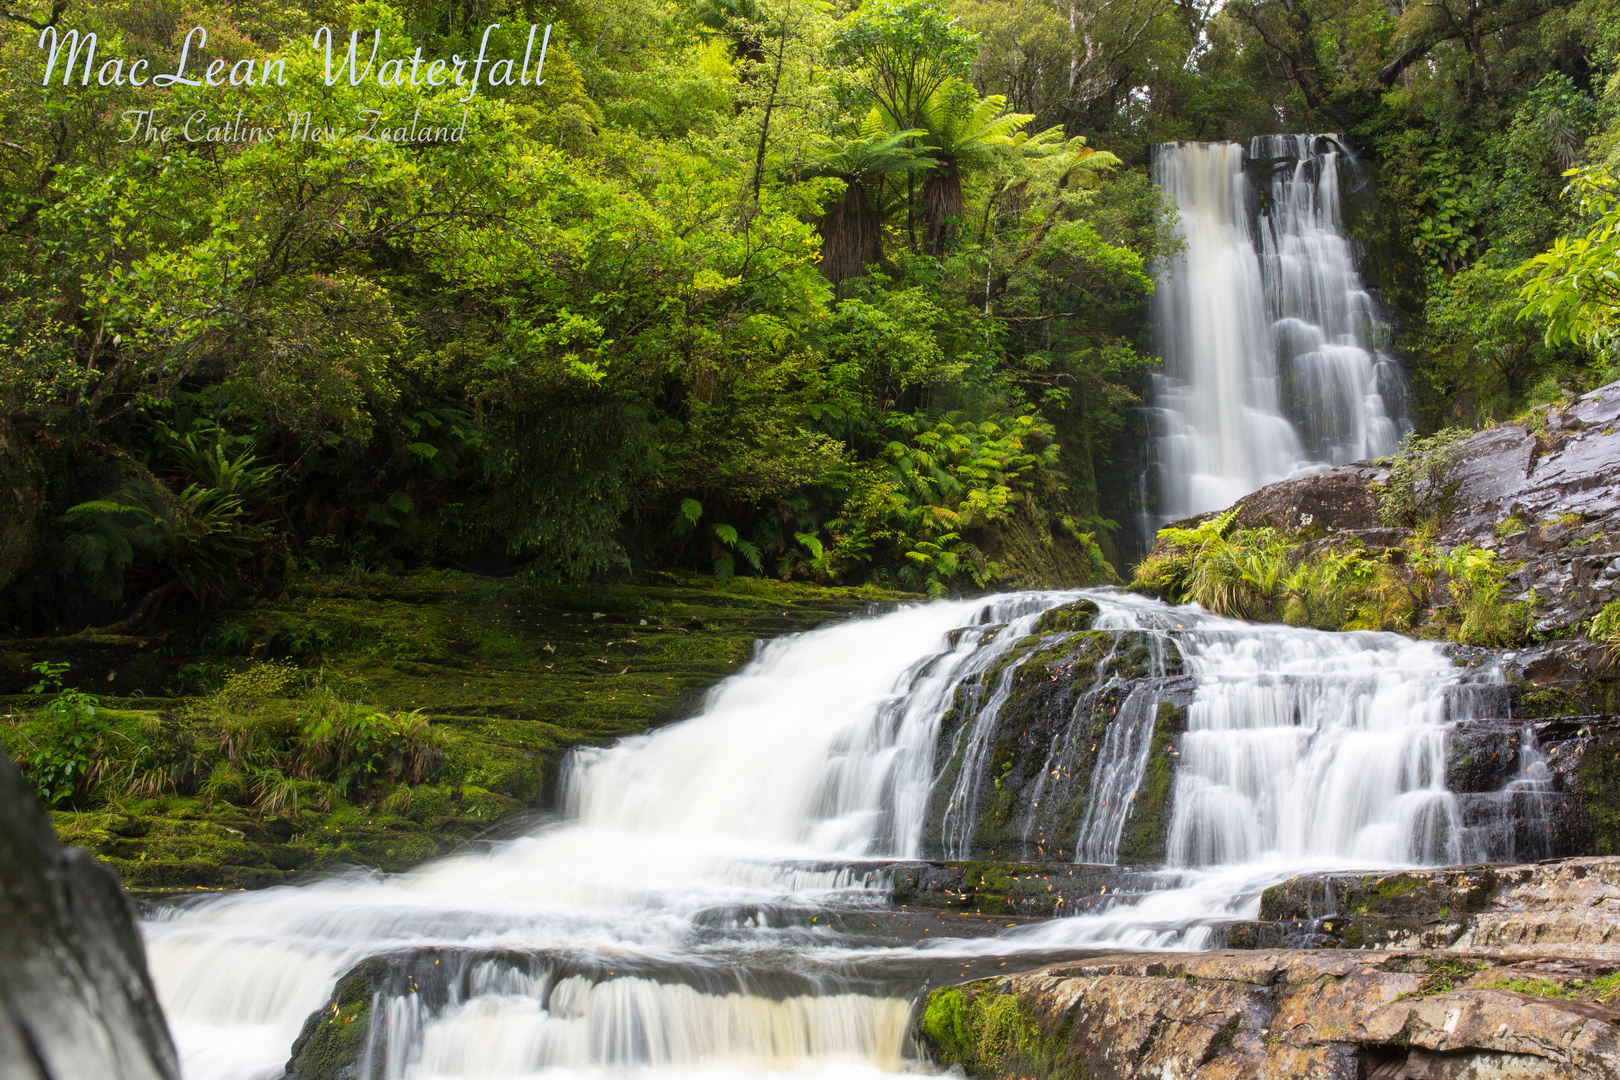 MacLean Waterfall